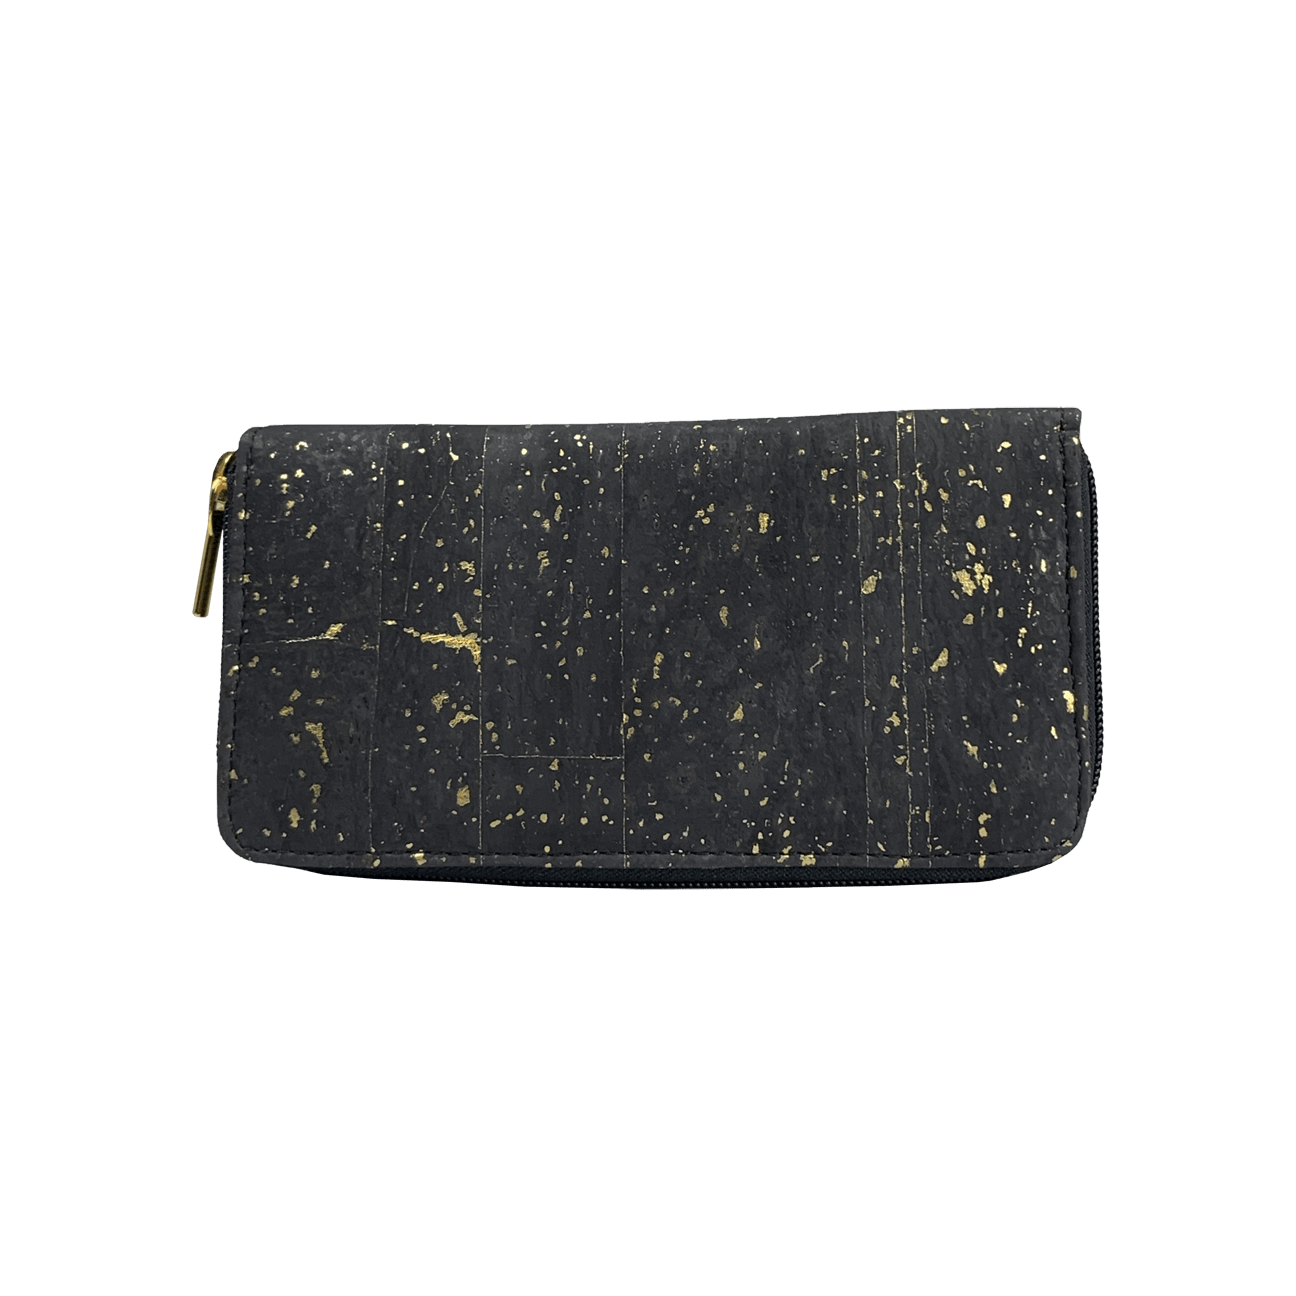 CorkHouse Wallet Golden Black Zip Around Cork Wallet